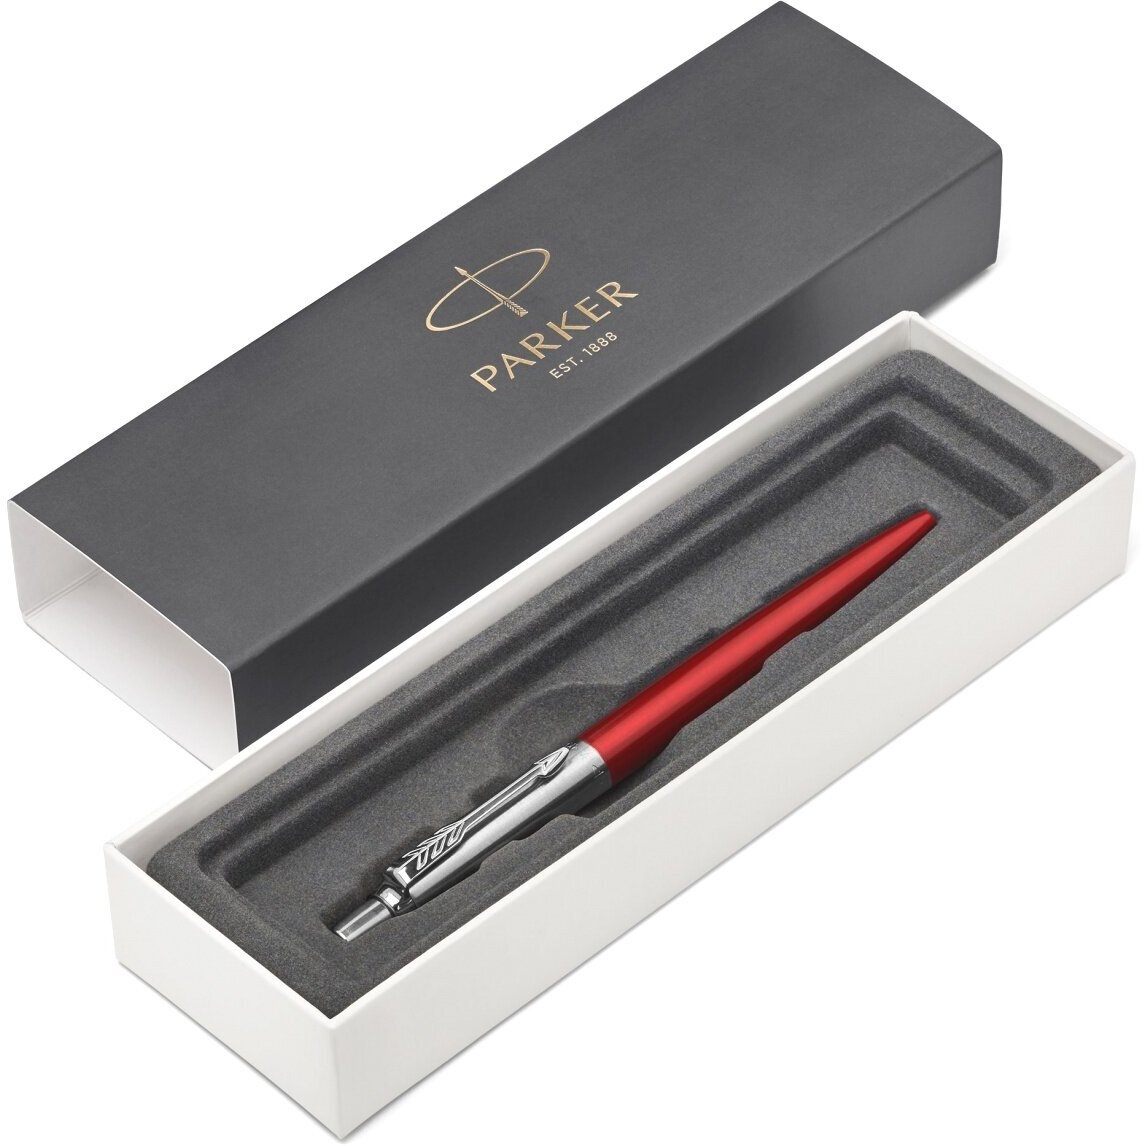 Parker ручка Jotter Core K63 Kensington Red CT M автоматическая шариковая, стержень синего цвета, в подарочной коробке